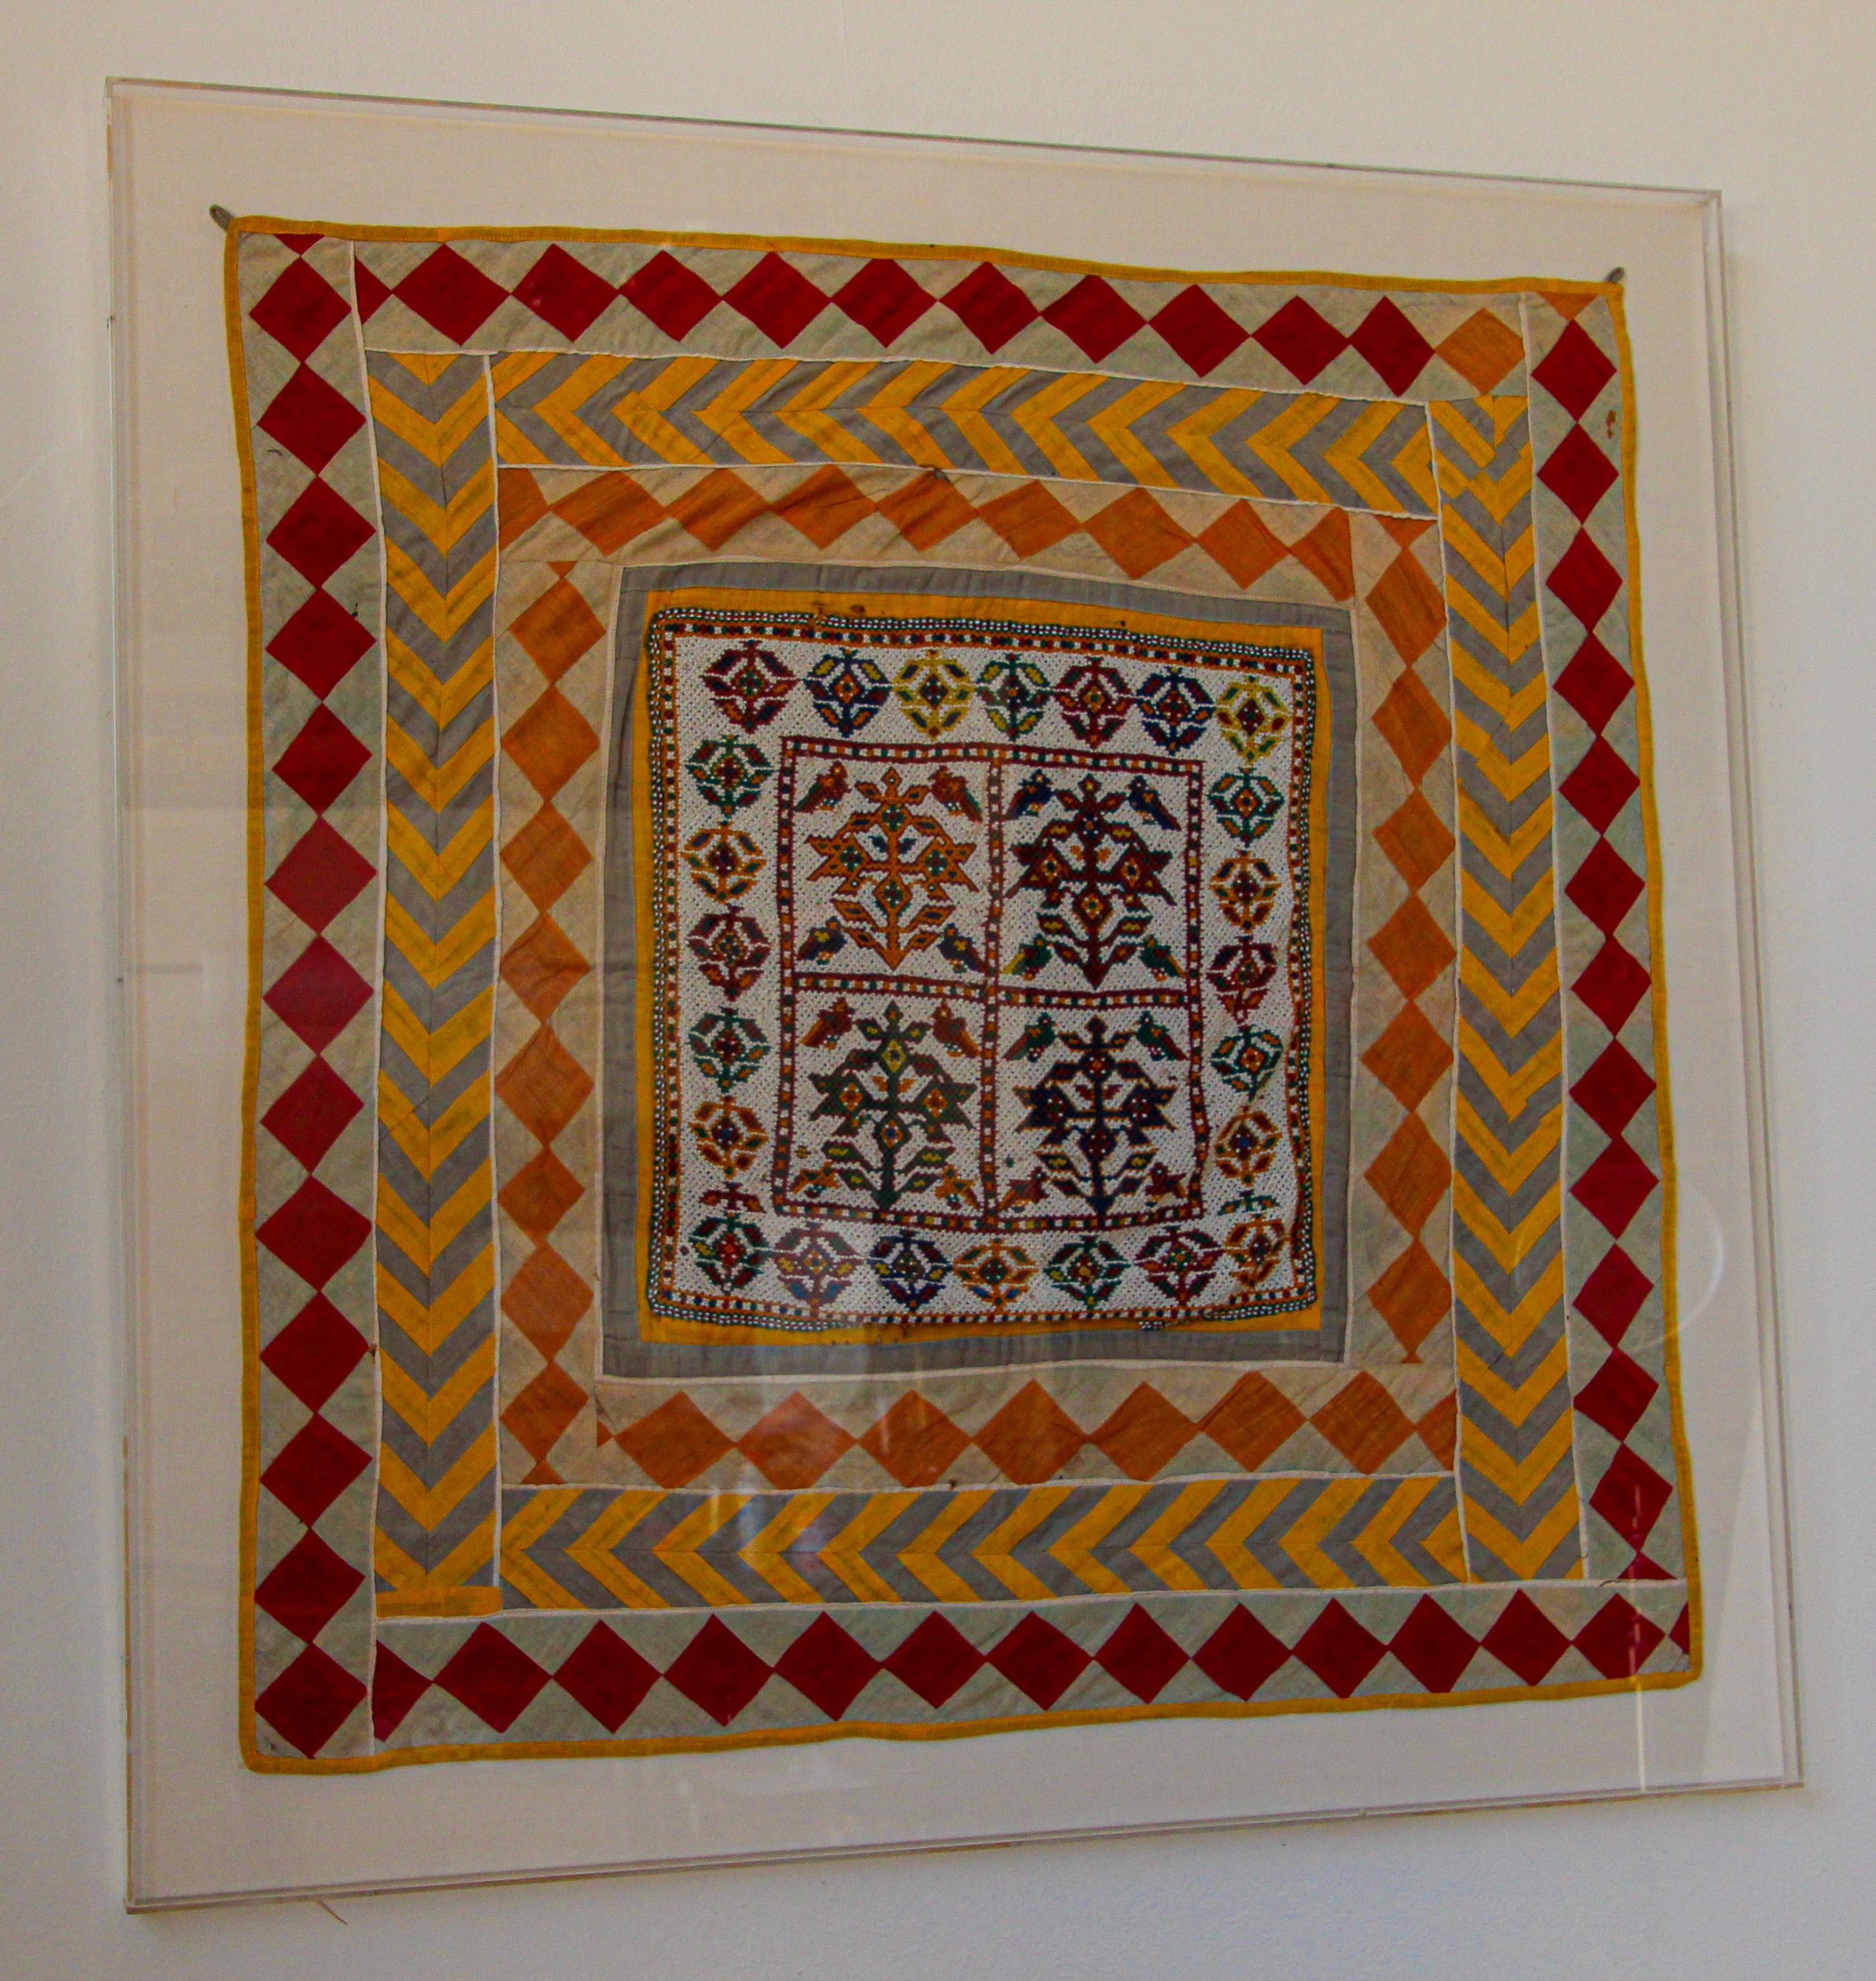 Vintage handgefertigt Gujarat Saurashta Ethnische Perlen Textil Indien.
Handgeperltes indisches Guarat-Paneel-Textil, gerahmt in einer Lucitbox.
Erstaunliche Handarbeit von Chakla Indian, Gujarat Staat, Saurashtra oder Kutch Region.
Ein so